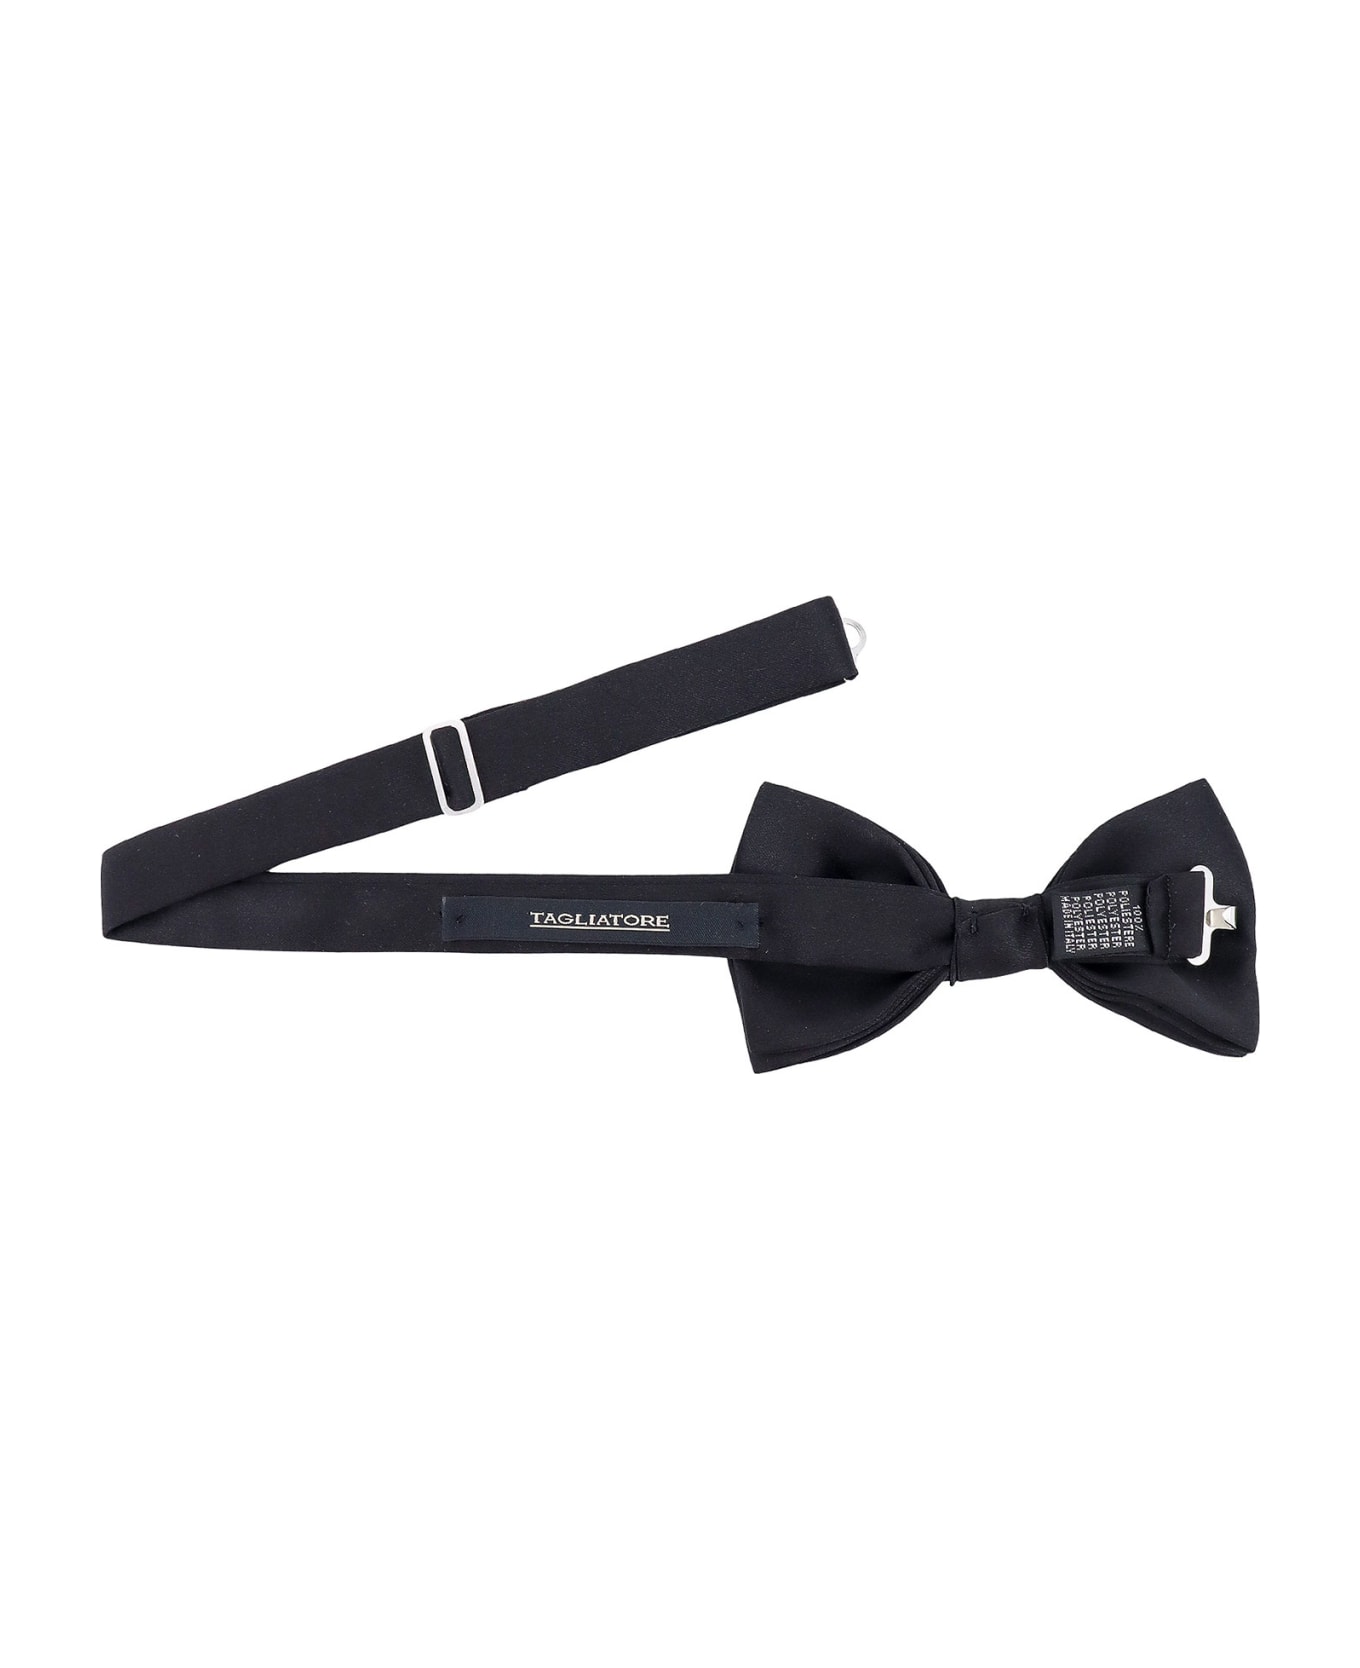 Tagliatore Bow-tie - Black ネクタイ